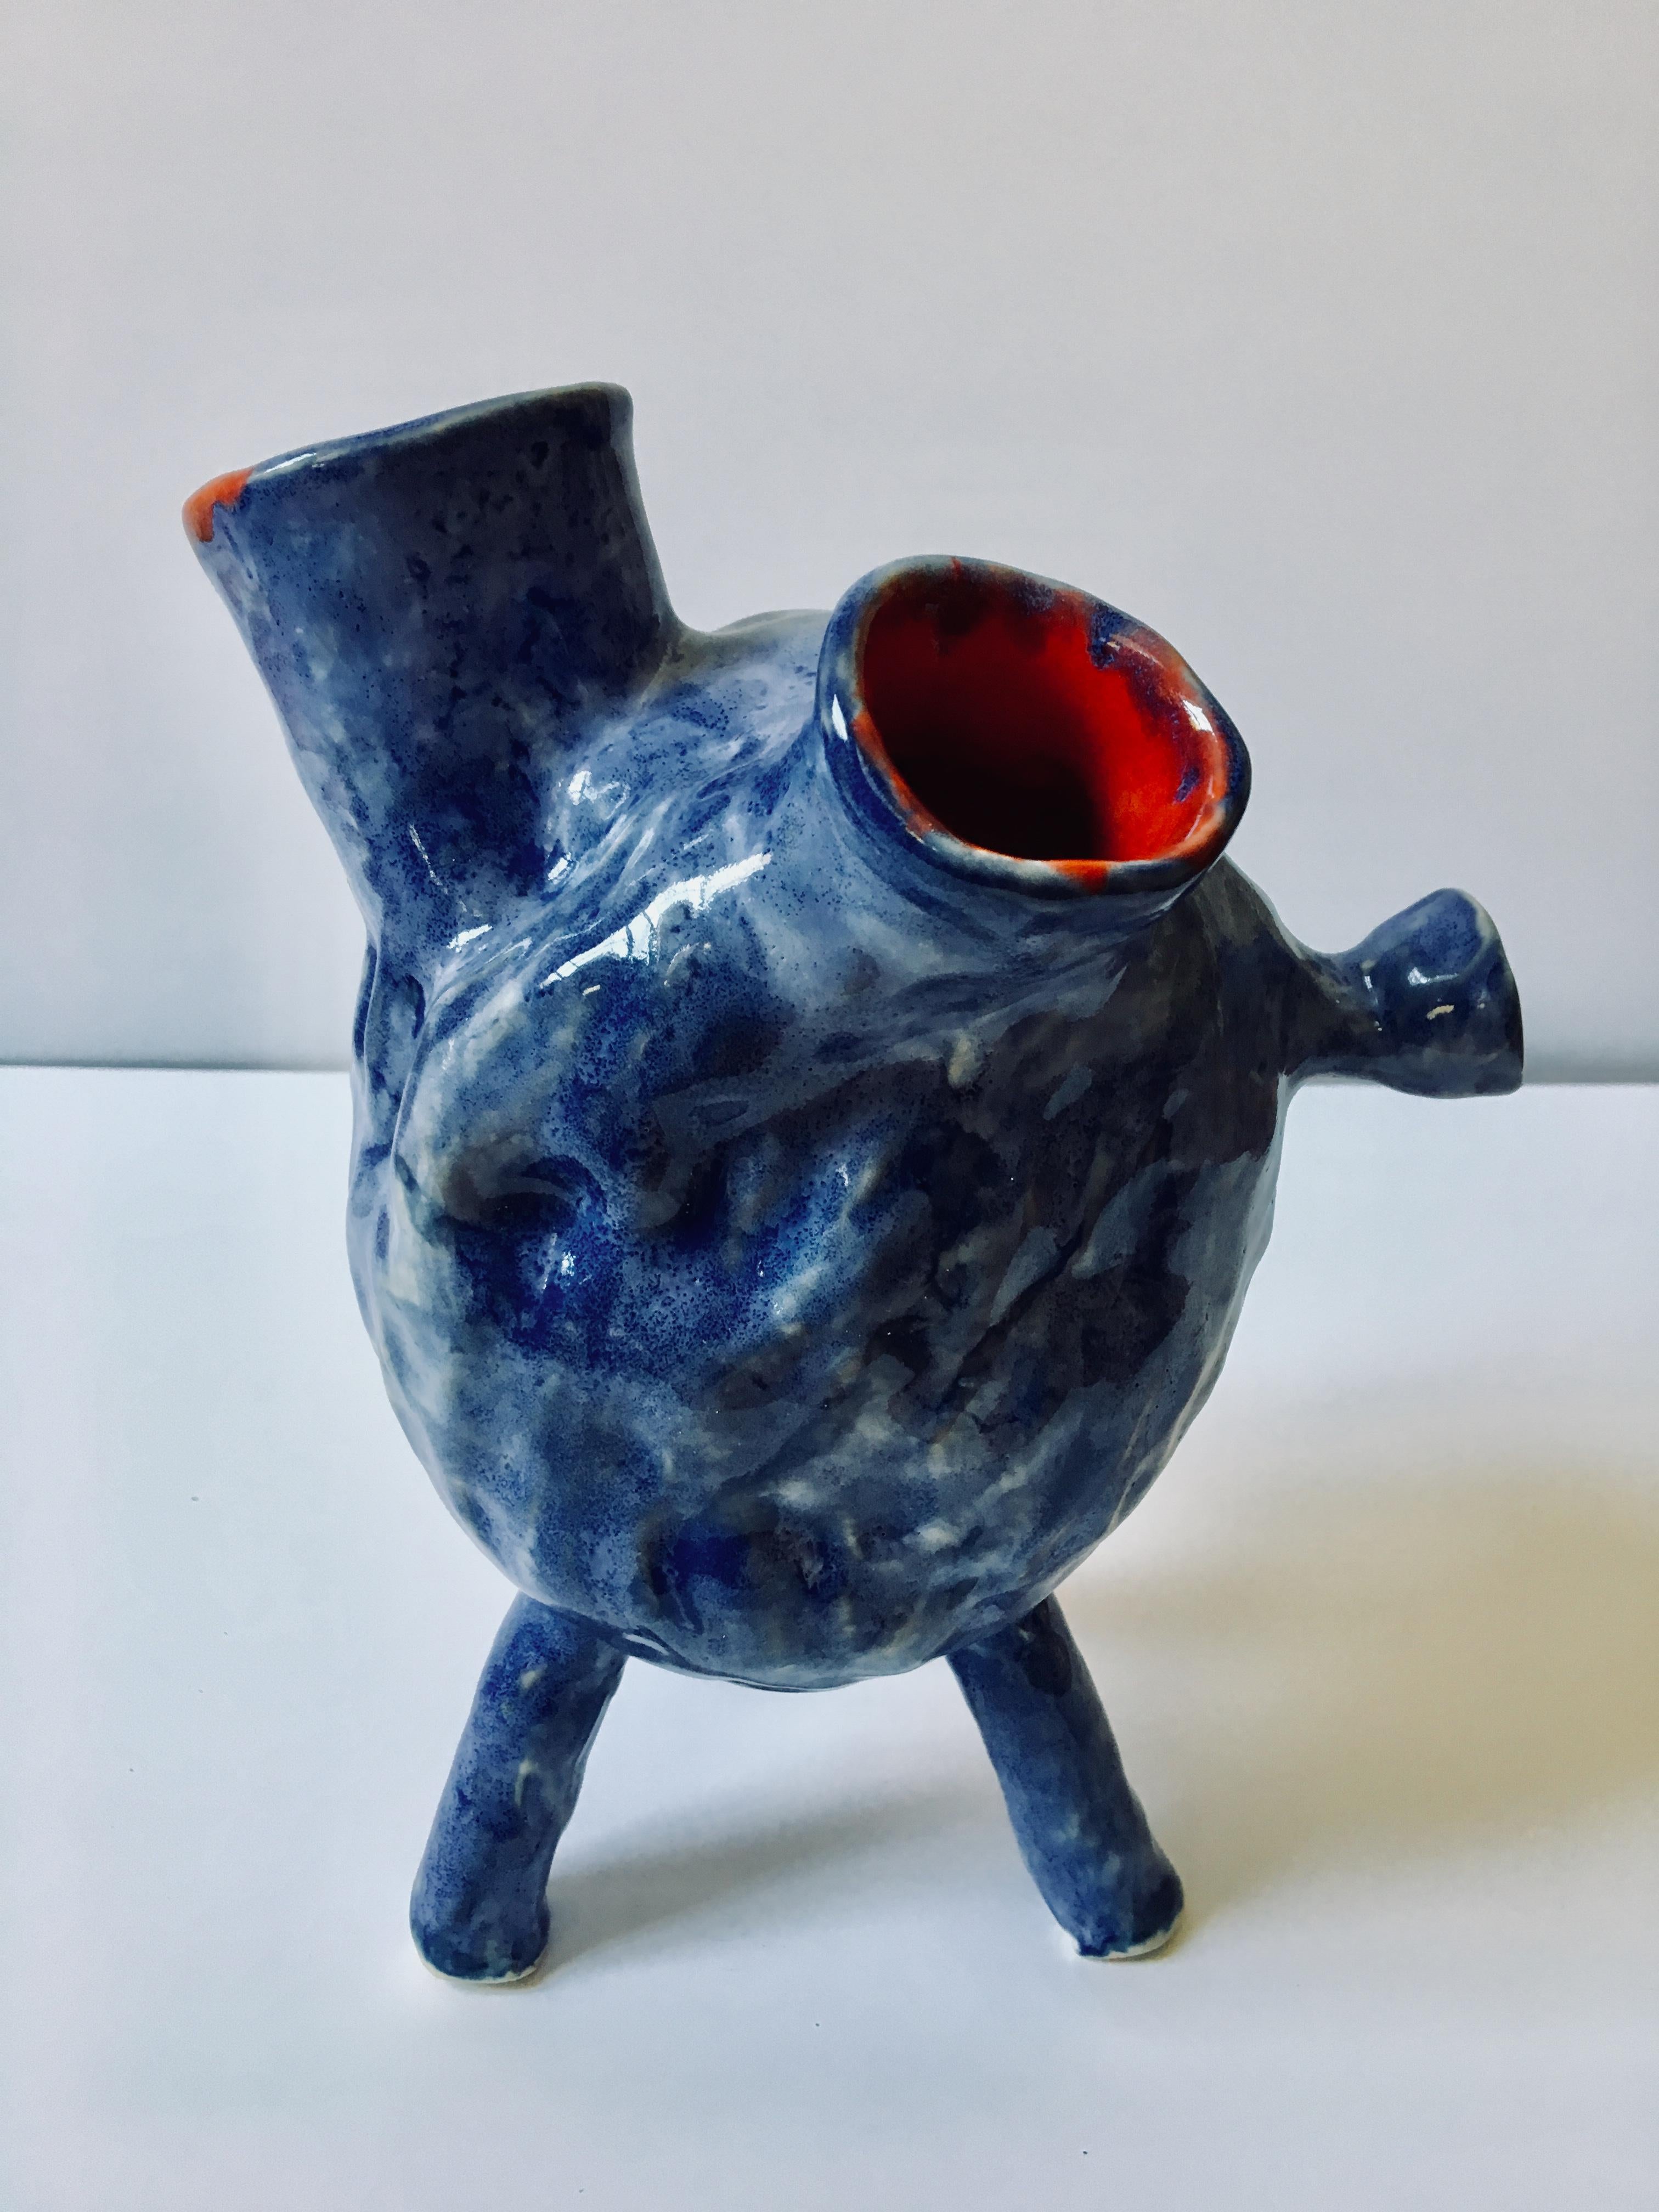 Sculpture ceramic vessel: Creature Medium No 4' 3